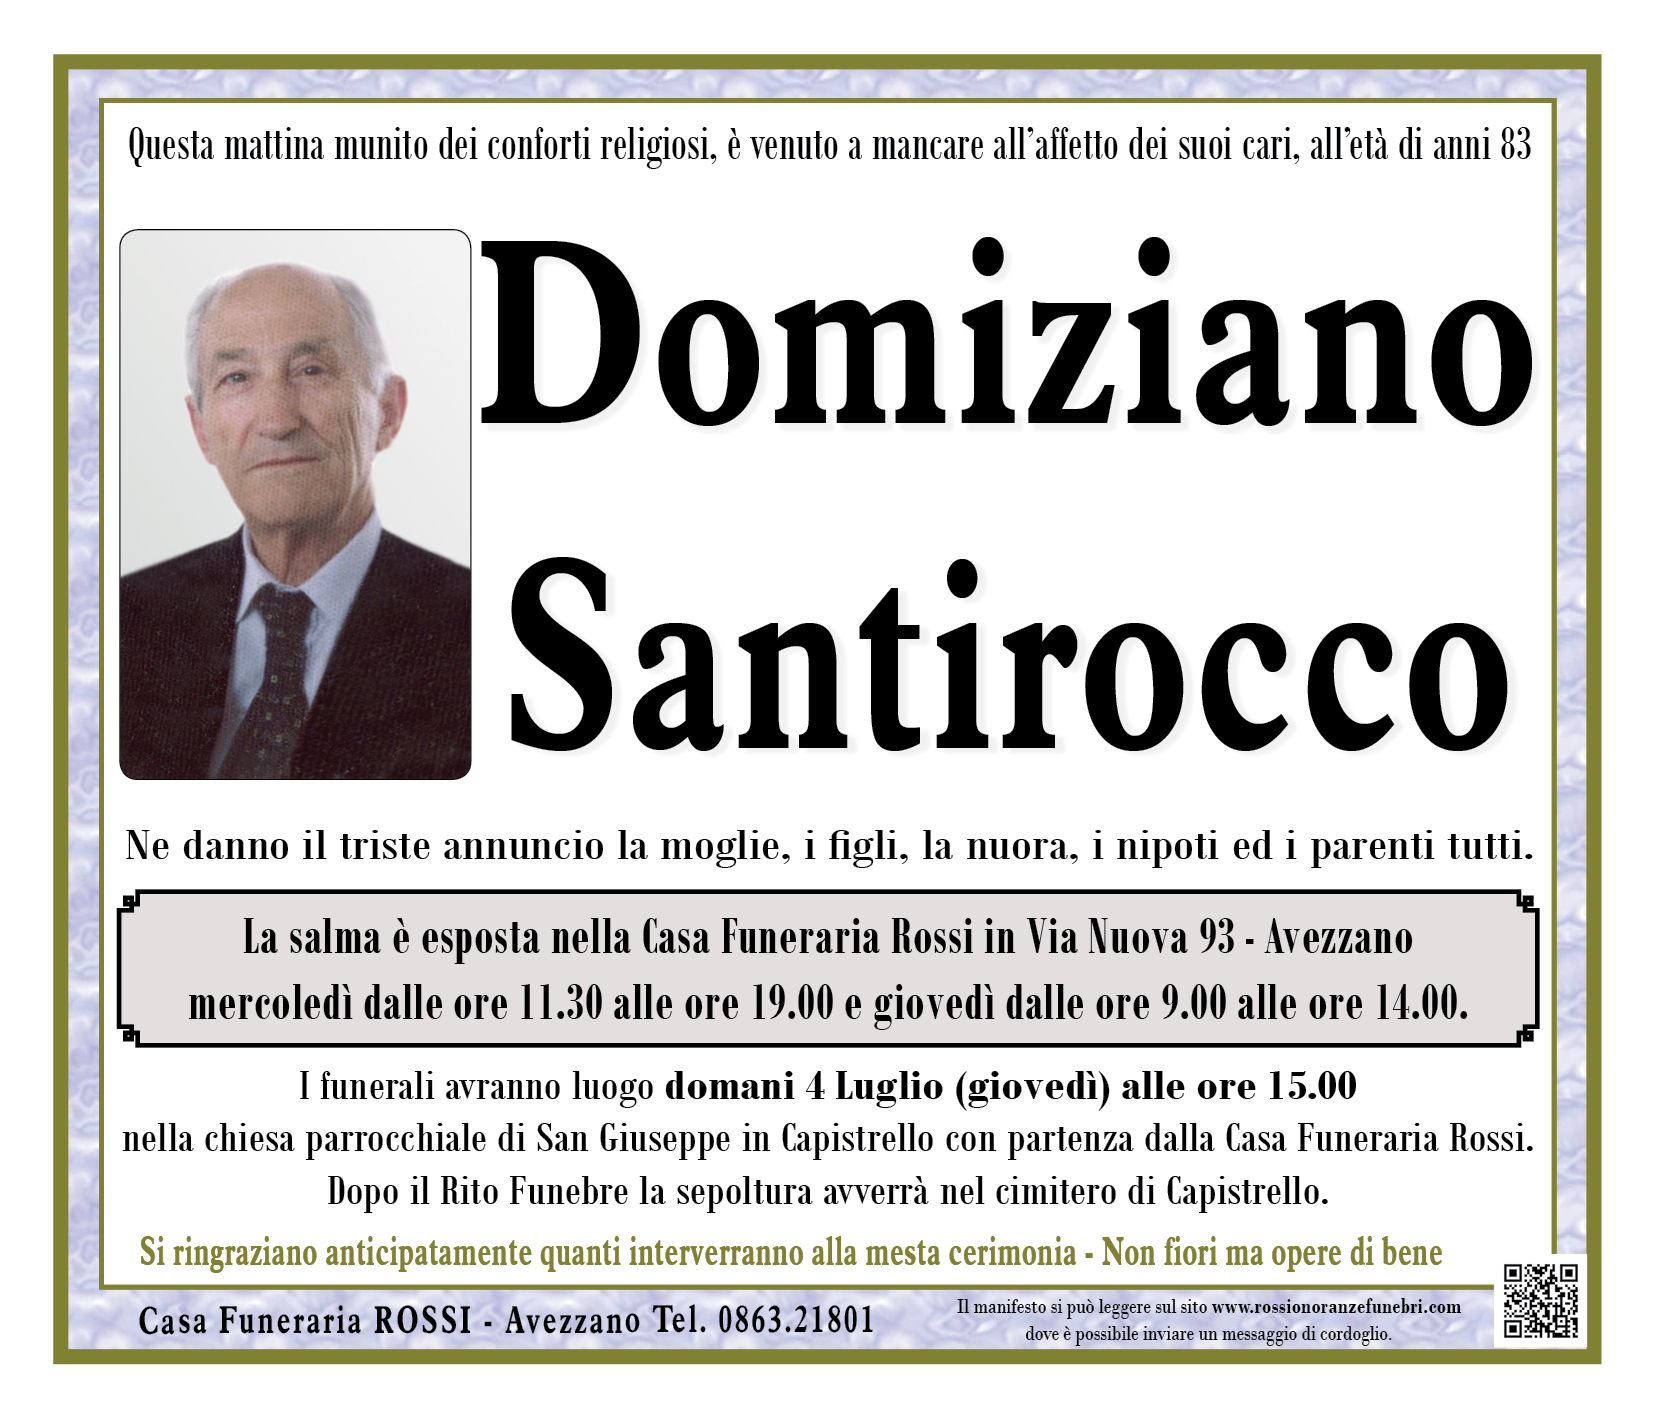 Domiziano Santirocco